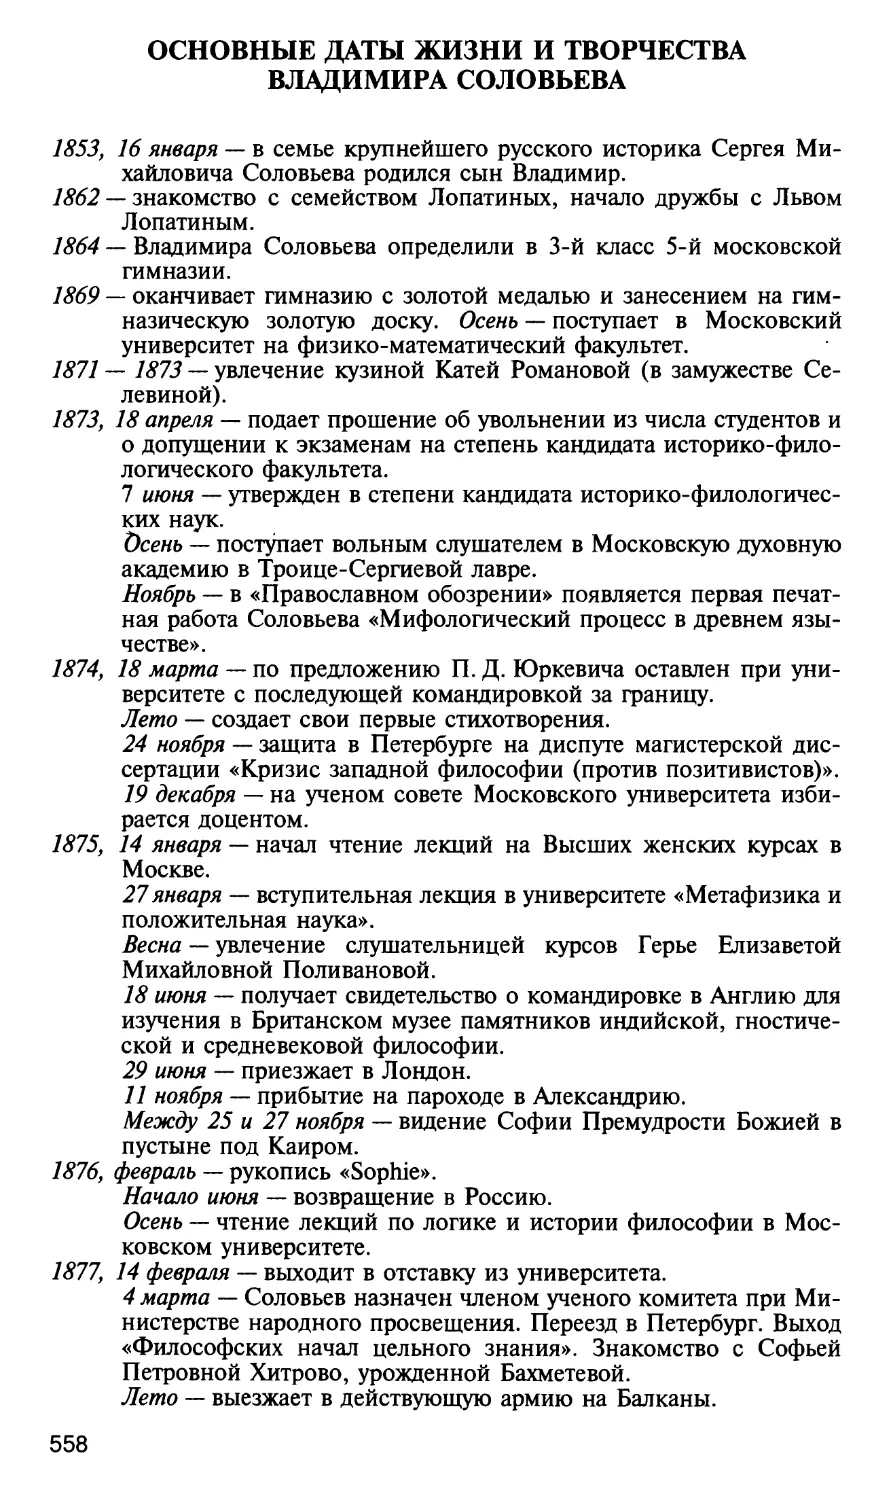 Основные даты жизни и творчества Владимира Соловьева